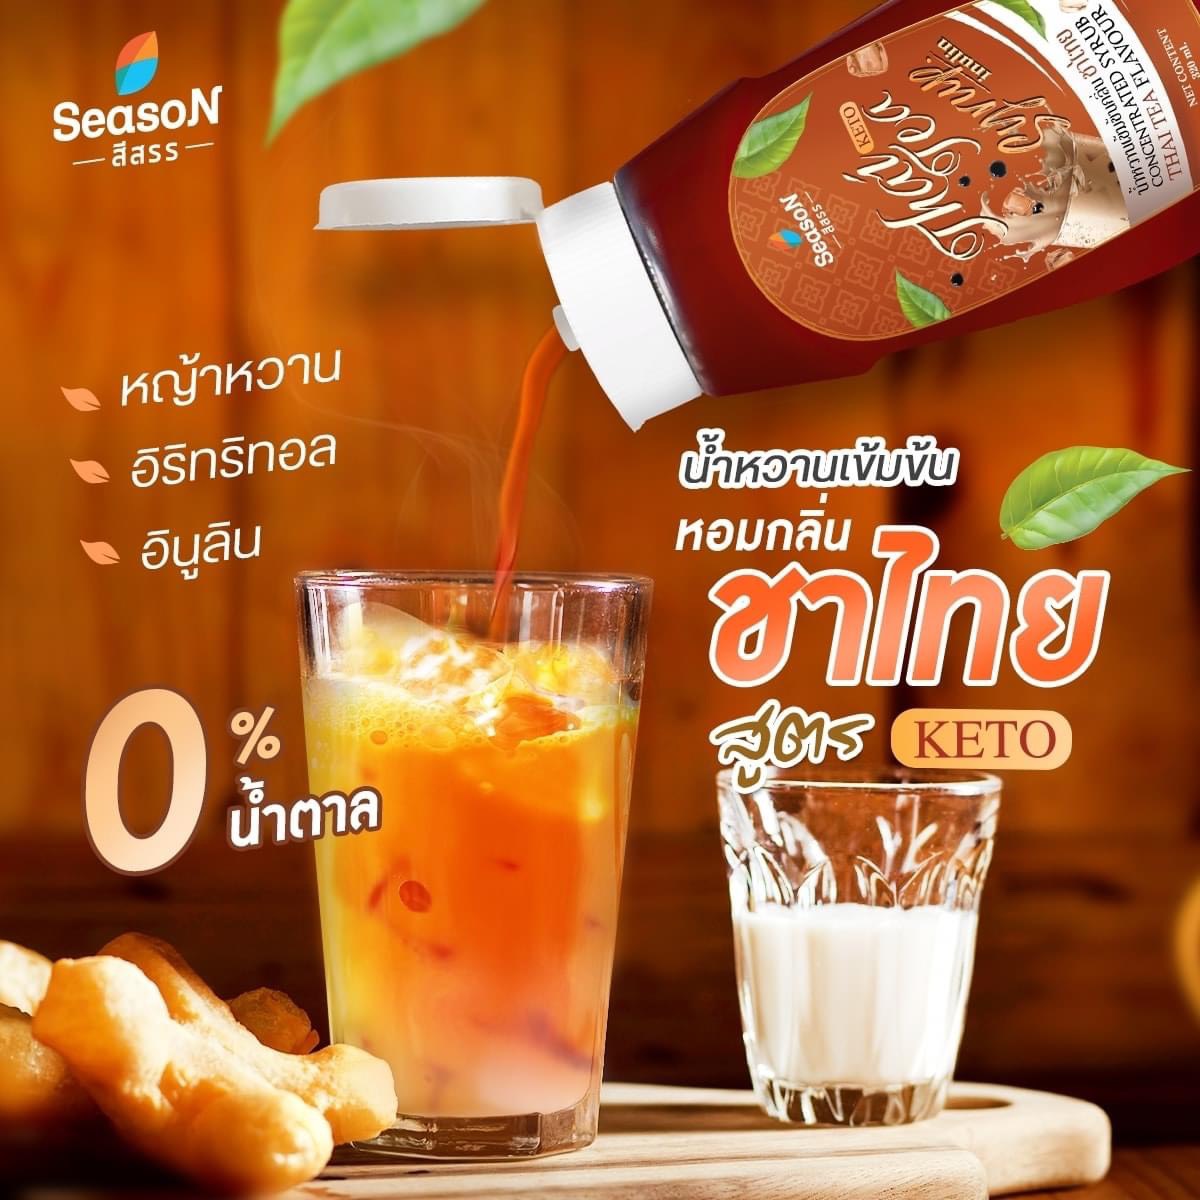 ไซรัปชาไทย ไซรัปคีโต ไซรัปไม่มีน้ำตาล สูตรคีโต ตราสีสรร.